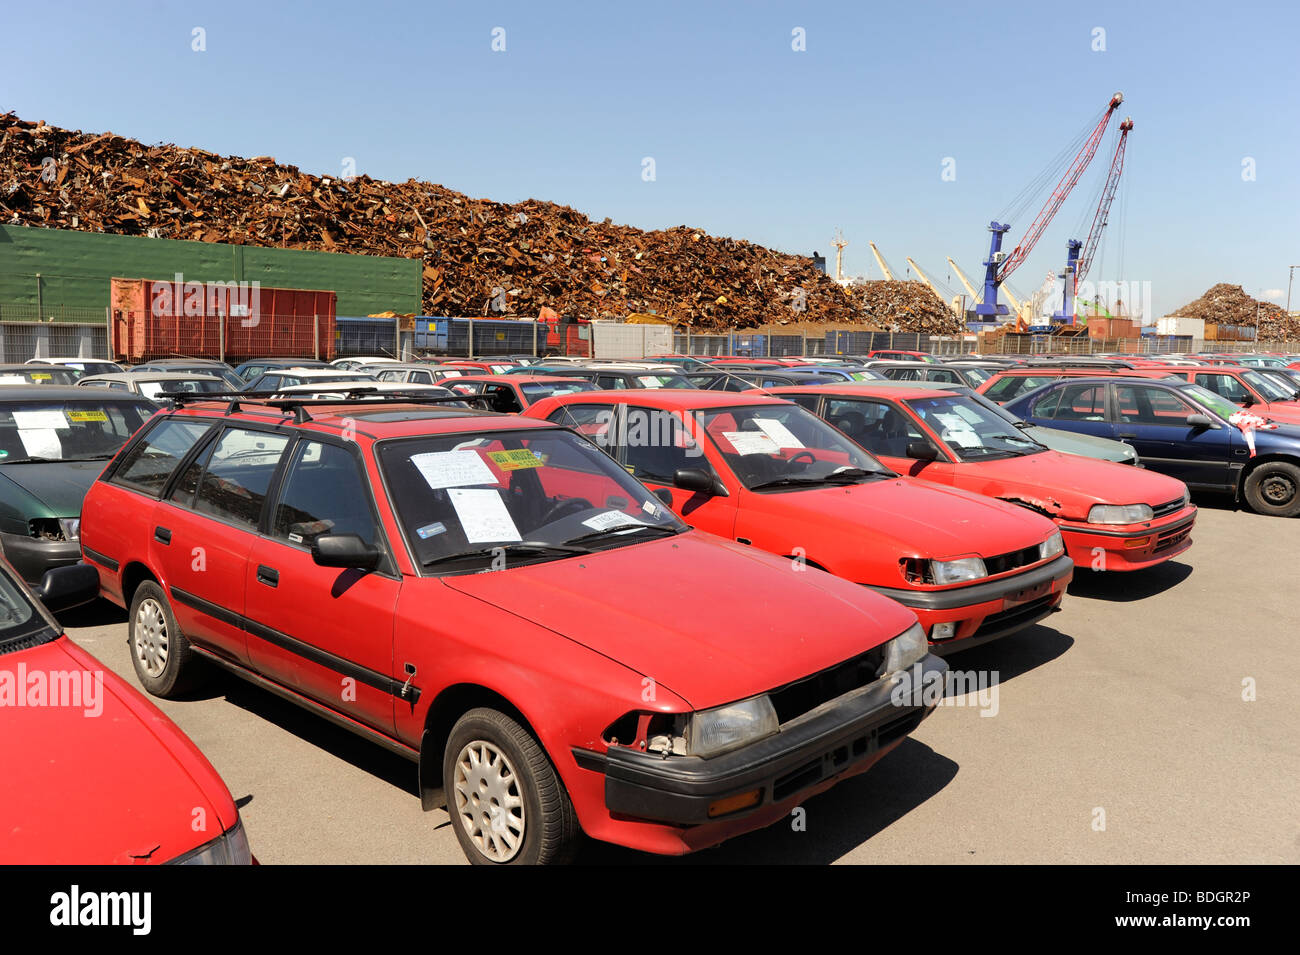 Alemania Hamburgo , utiliza los coches viejos esperan exportar a África Cotonou Benin en el muelle en el puerto de Hamburgo Foto de stock